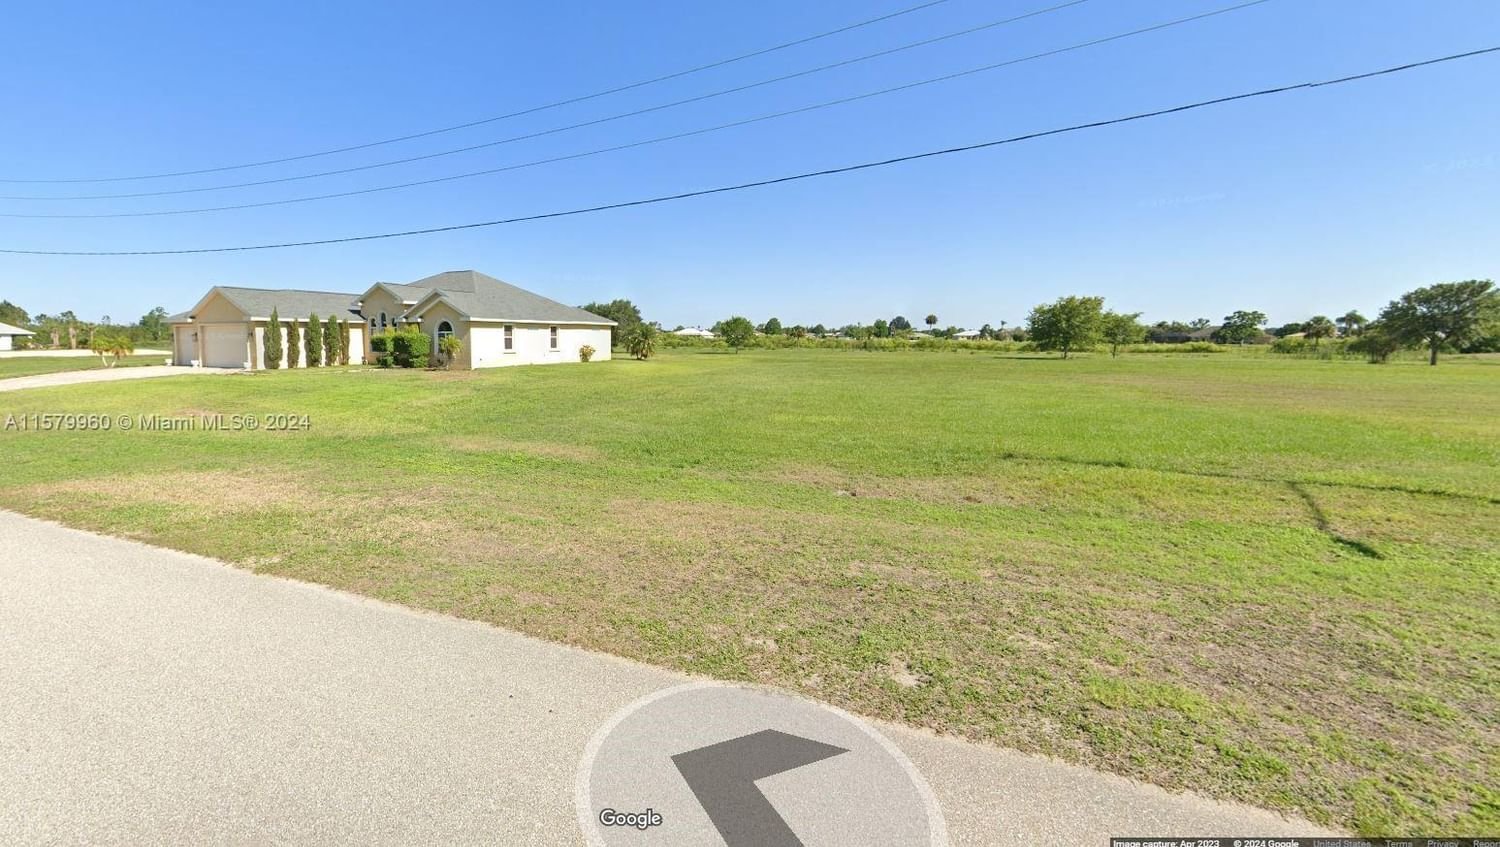 Real estate property located at 1625 Duane Palmer Blvd, Highlands County, Spring Lake, Sebring, FL